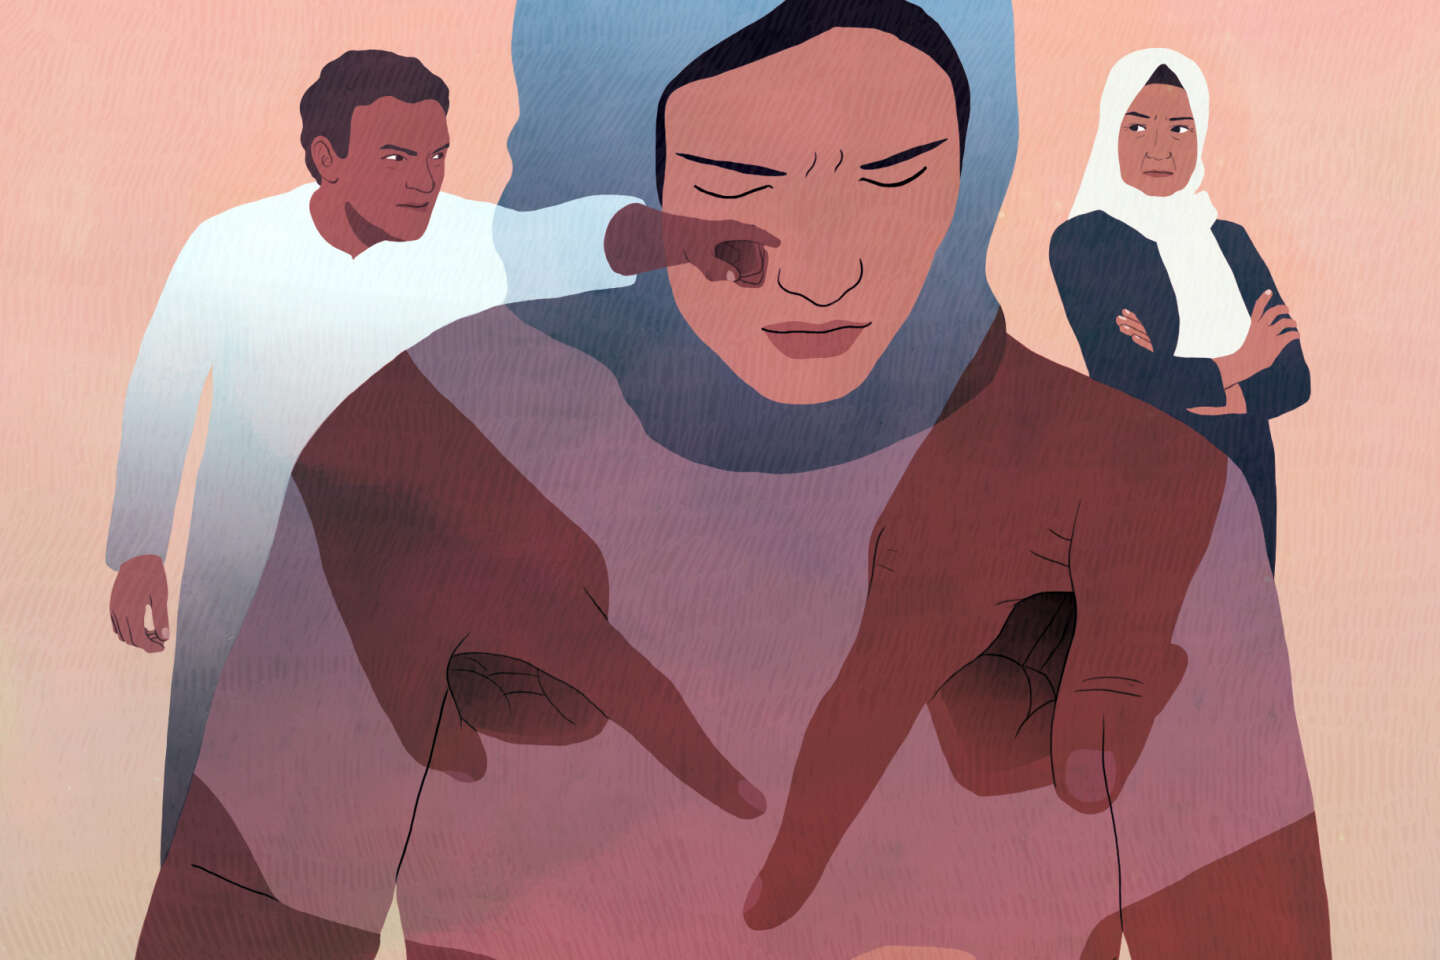 Au Maroc, les femmes risquent leur vie lors d’avortements clandestins